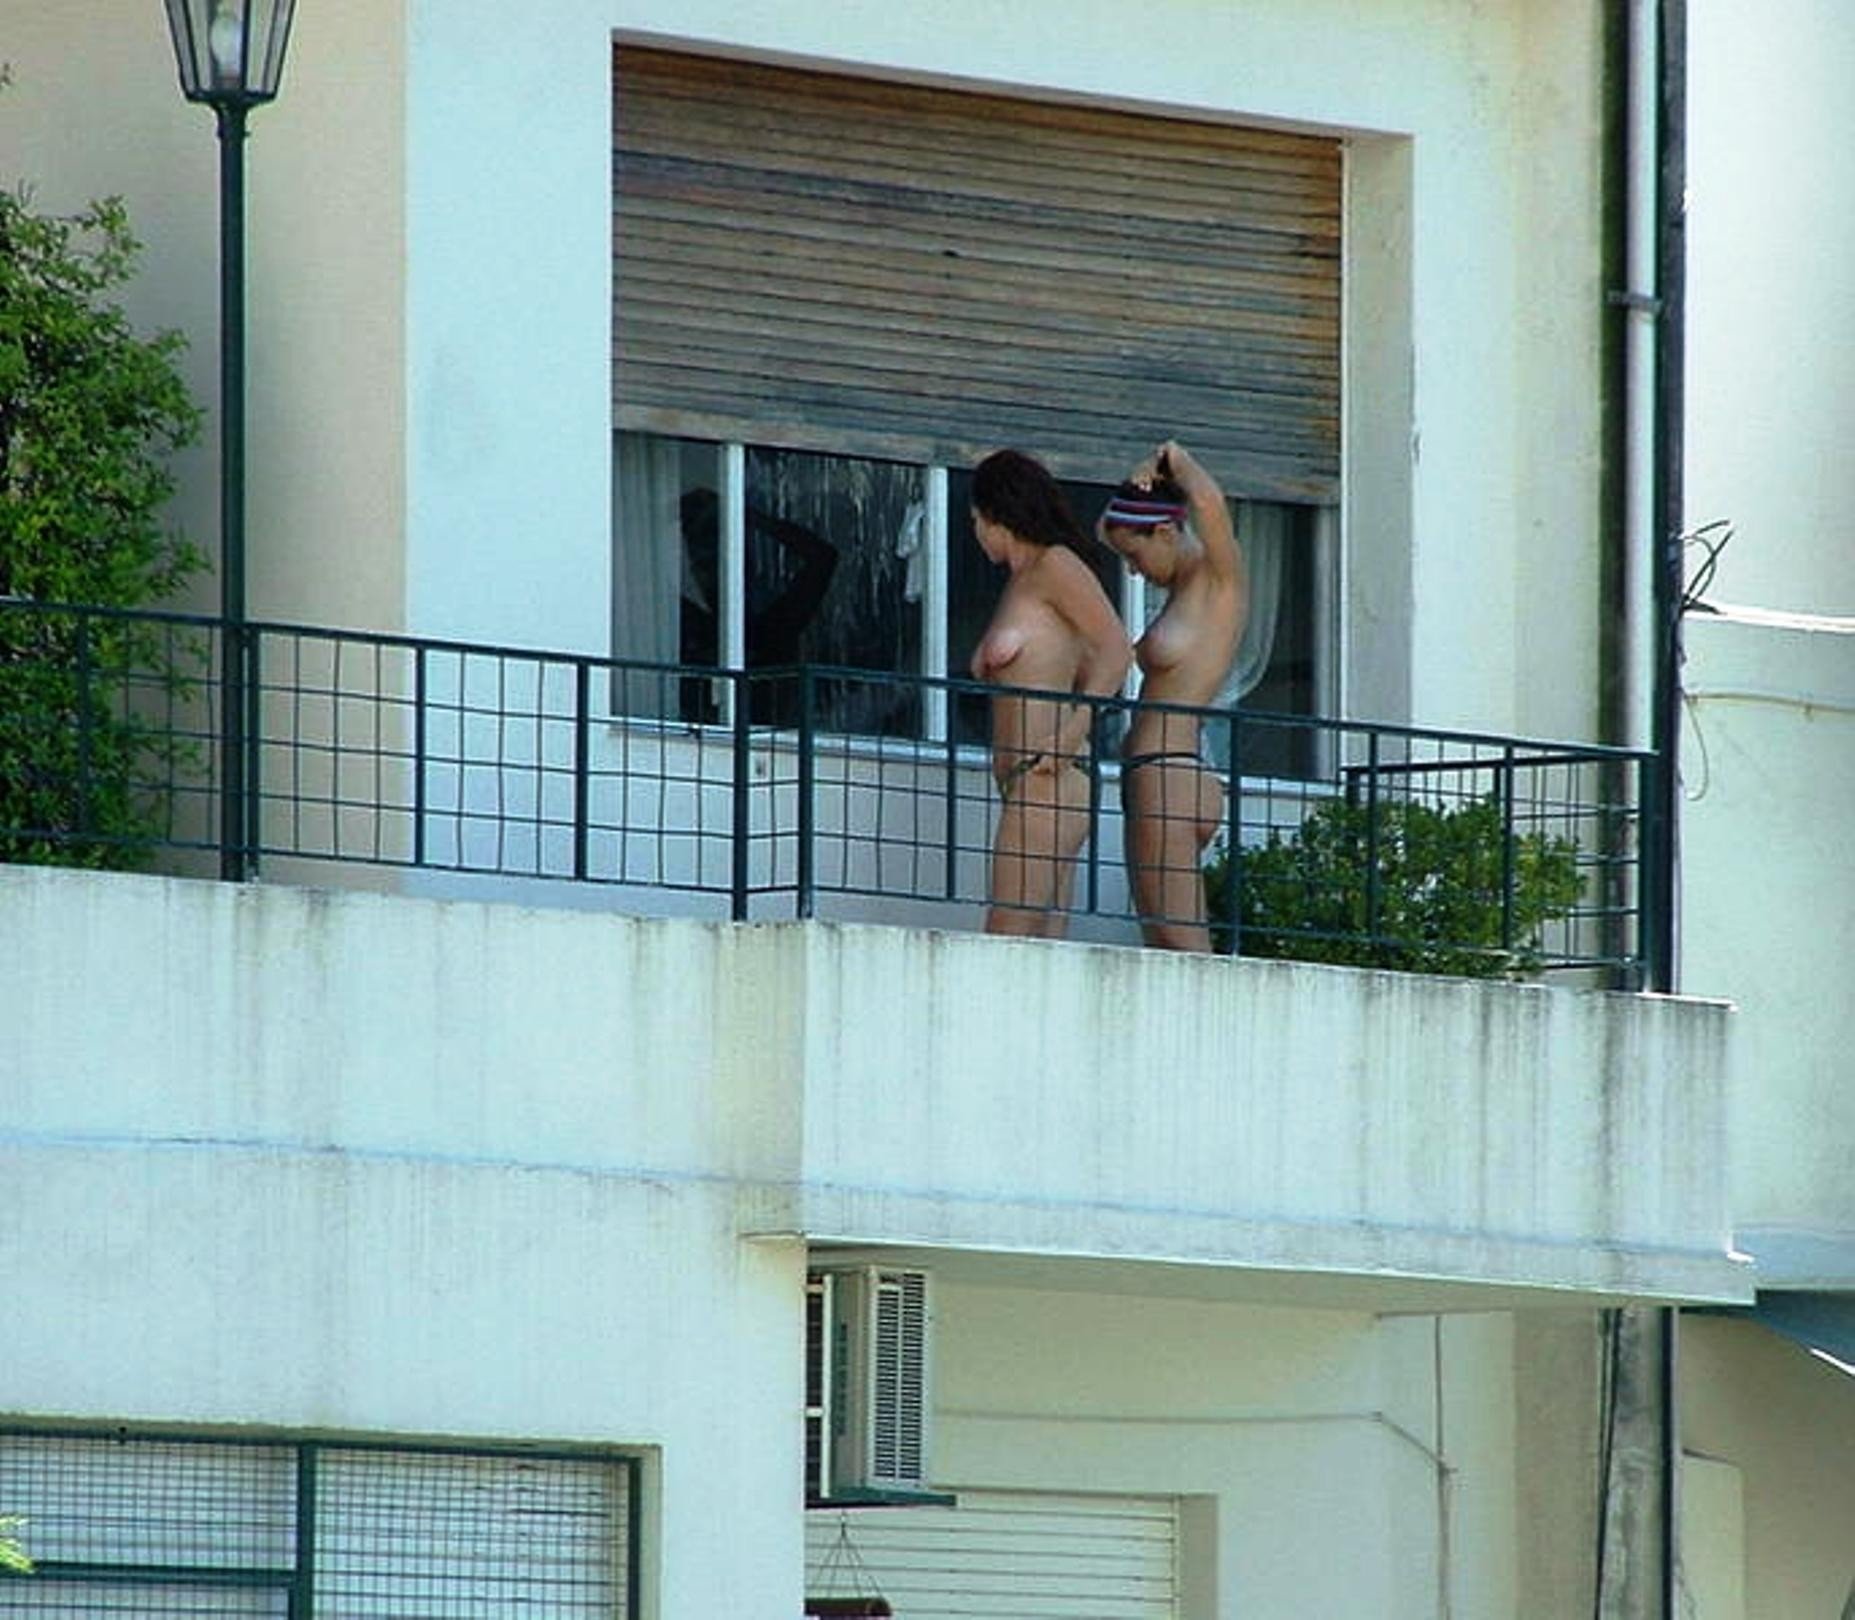 Засветы голых девушек на балконе (60 фото) порно и эротика goloe me. goloe....